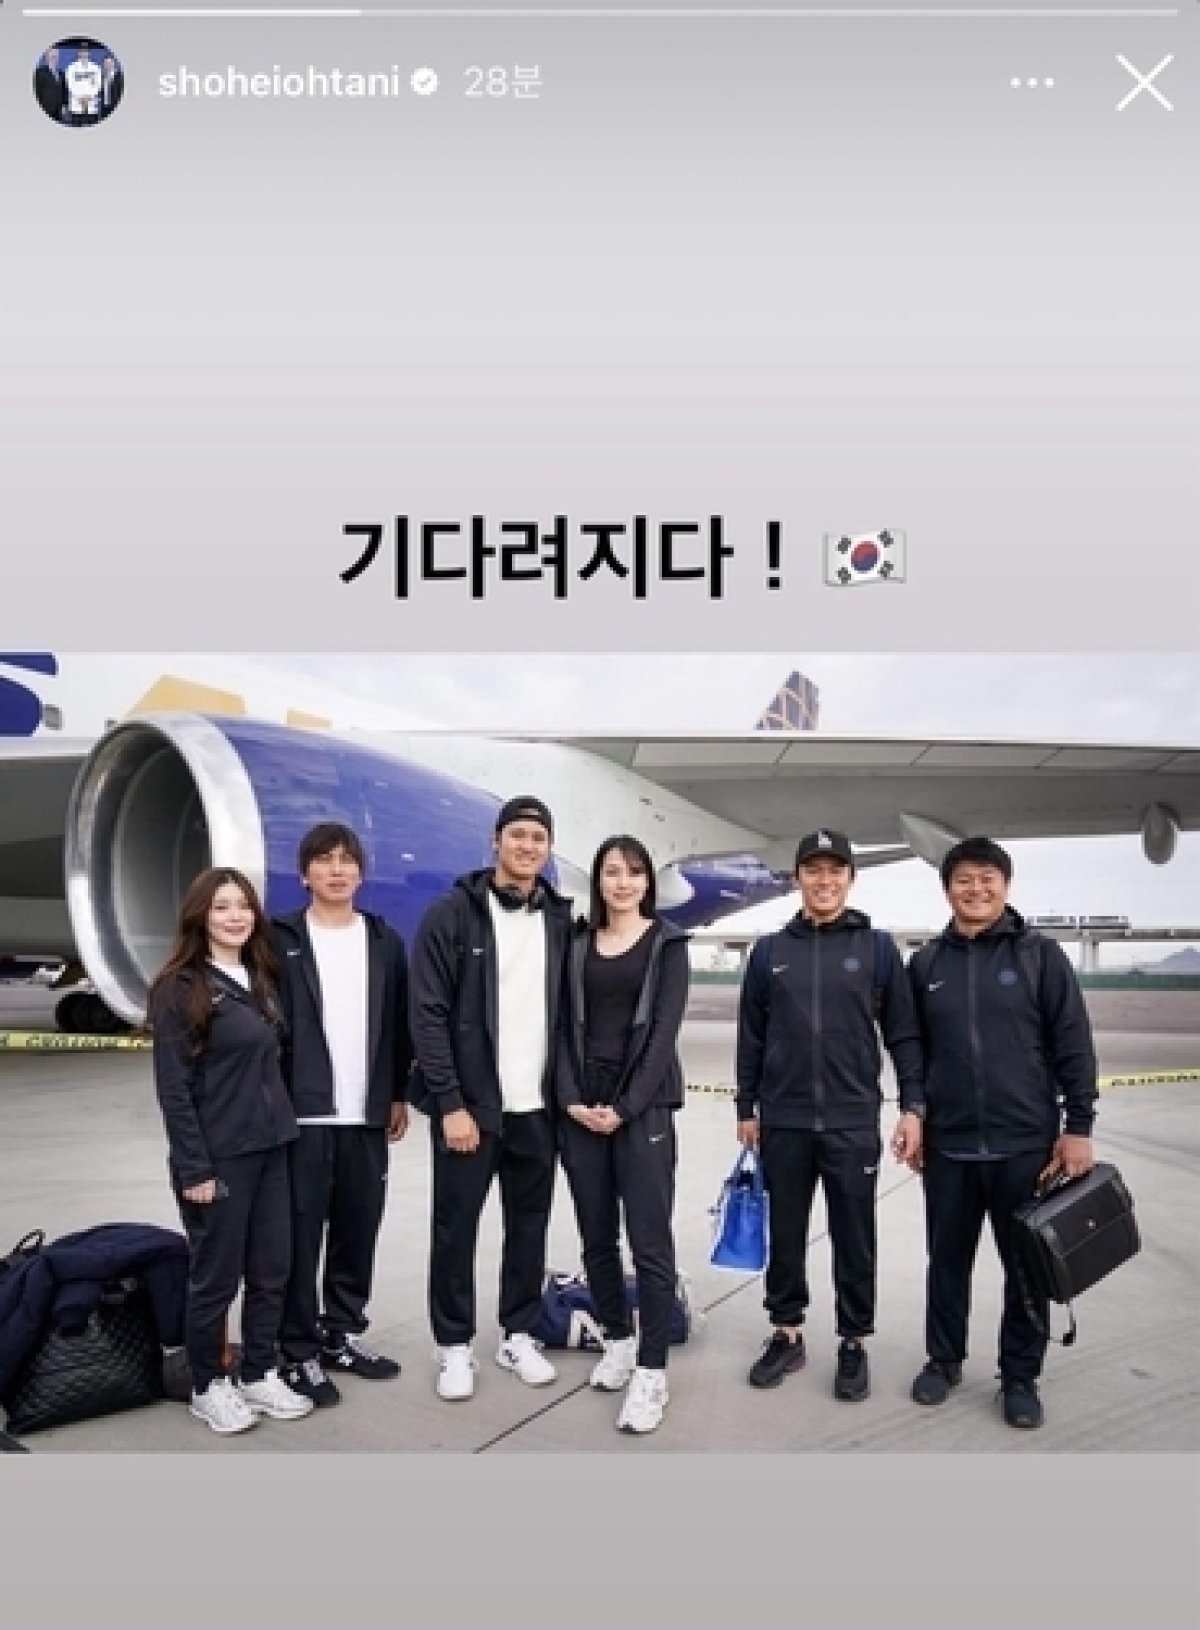  한국으로 향하는 비행기 탑승 전 야마모토(왼쪽 두 번째) 등과 함께 찍은 사진을 올린 오타니(왼쪽 세 번째). (오타니 SNS) 